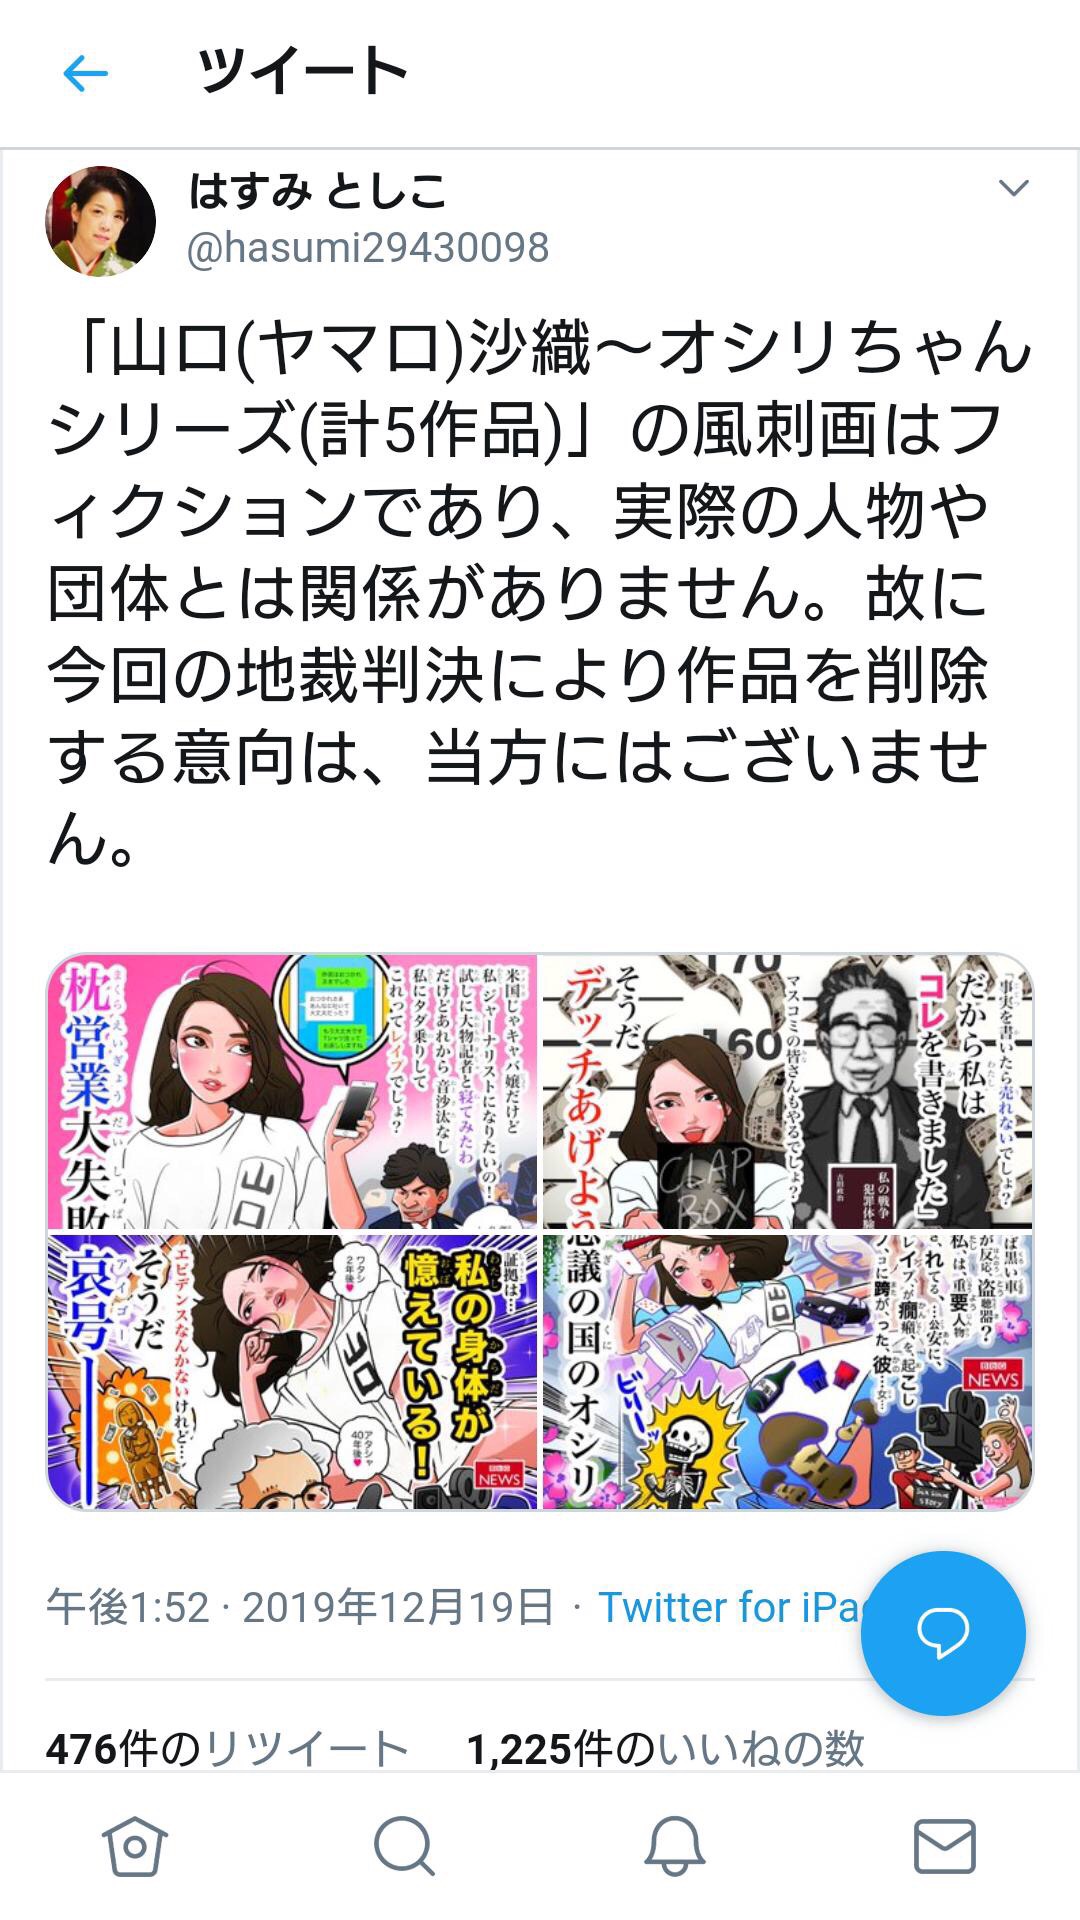 【画像】ネトウヨ画家はすみとしこ、伊藤詩織さんの法的措置を風刺画でワンチャン逃げ切りを狙う模様ｗｗｗ